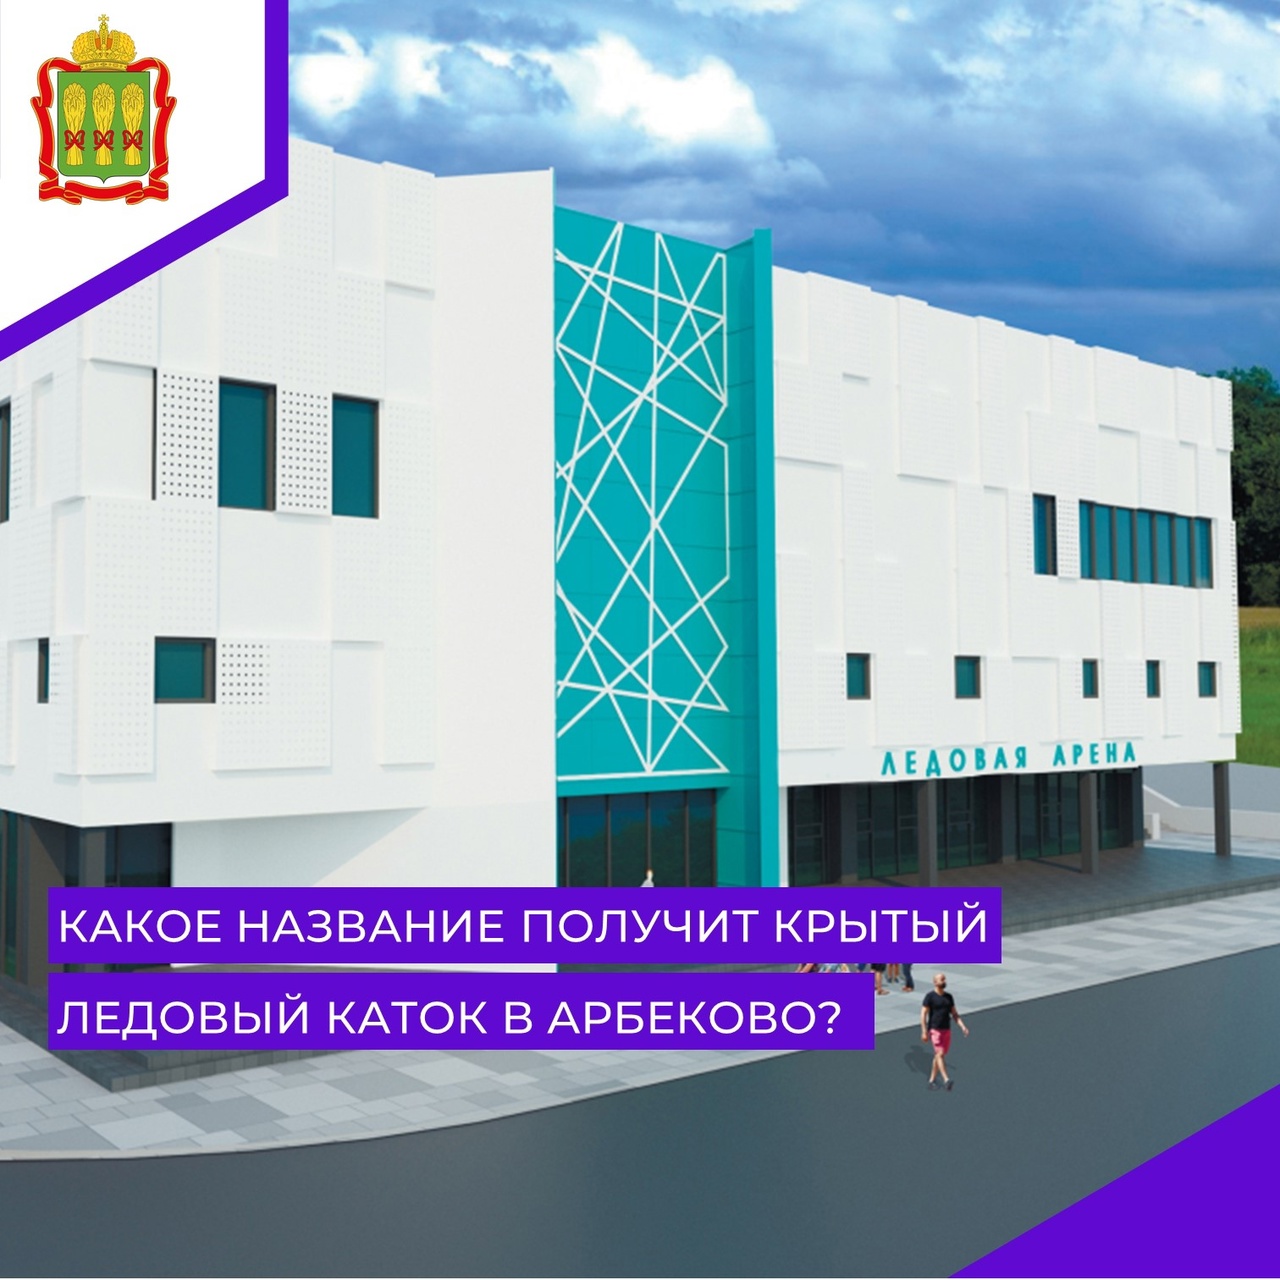 Пензенцы начали голосовать за название нового открытого катка в Арбеково